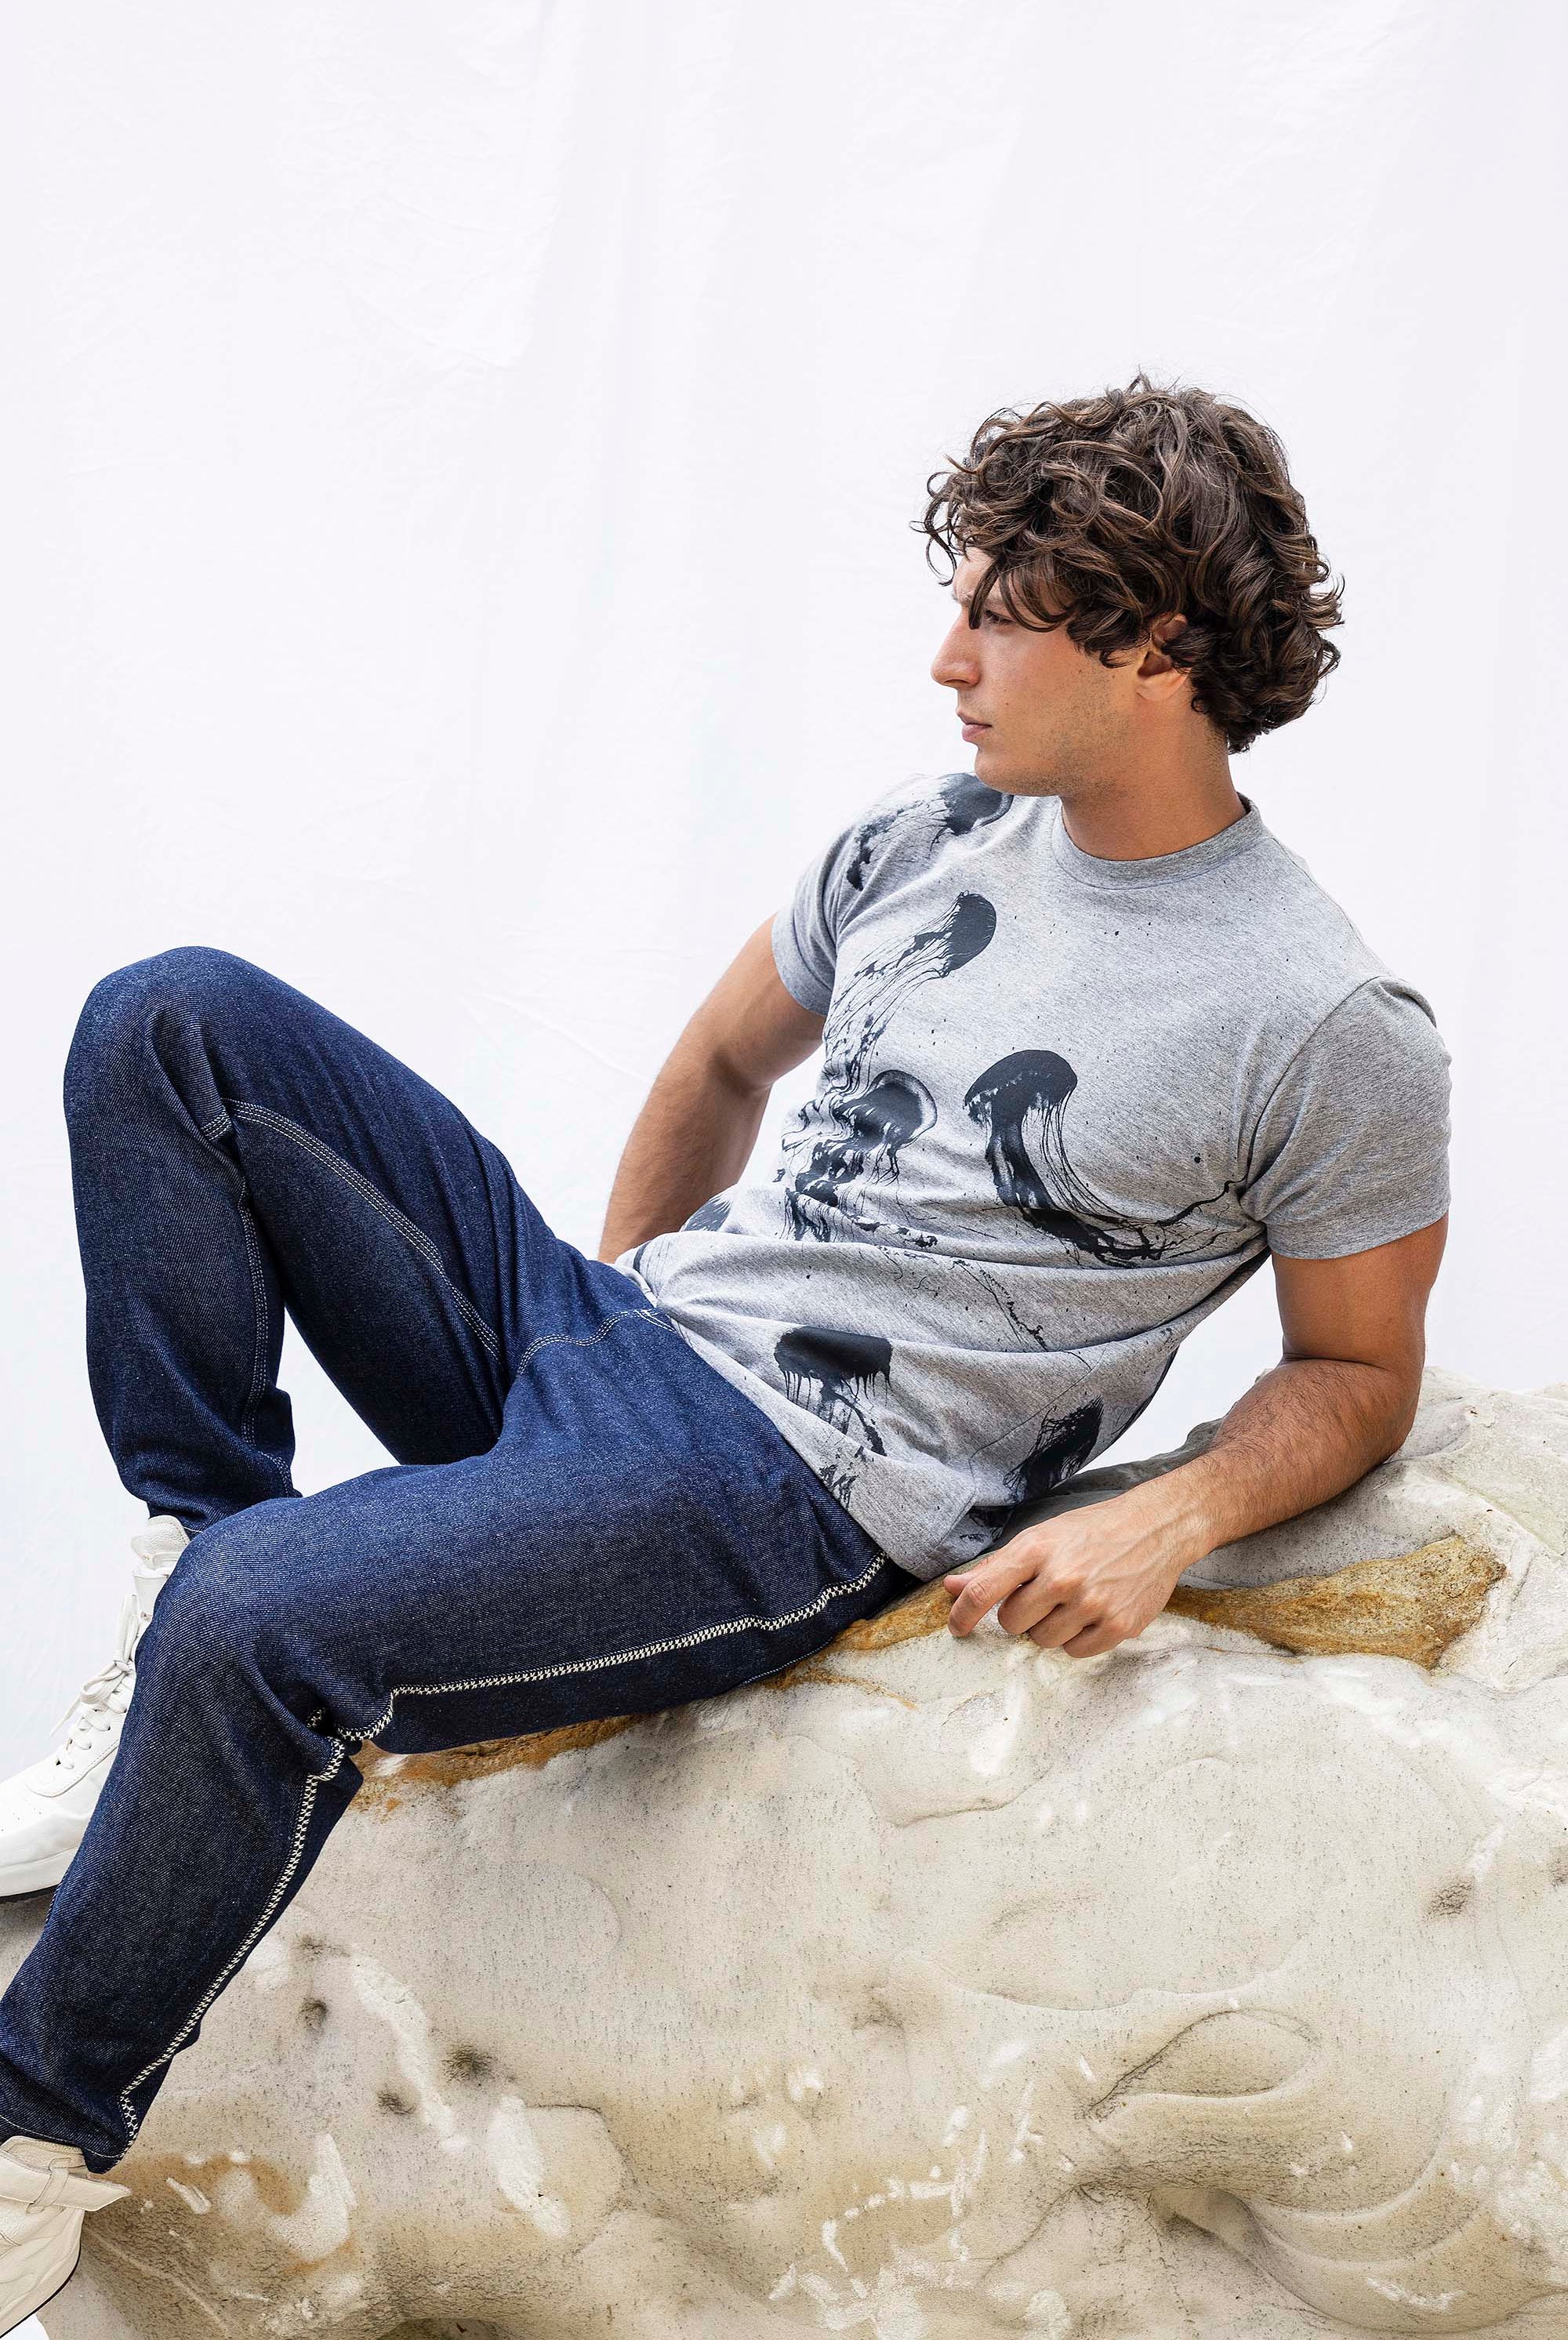 T-Shirt Mario Medusas Gris t-shirts pour homme simples, polyvalents pour toutes les occasions